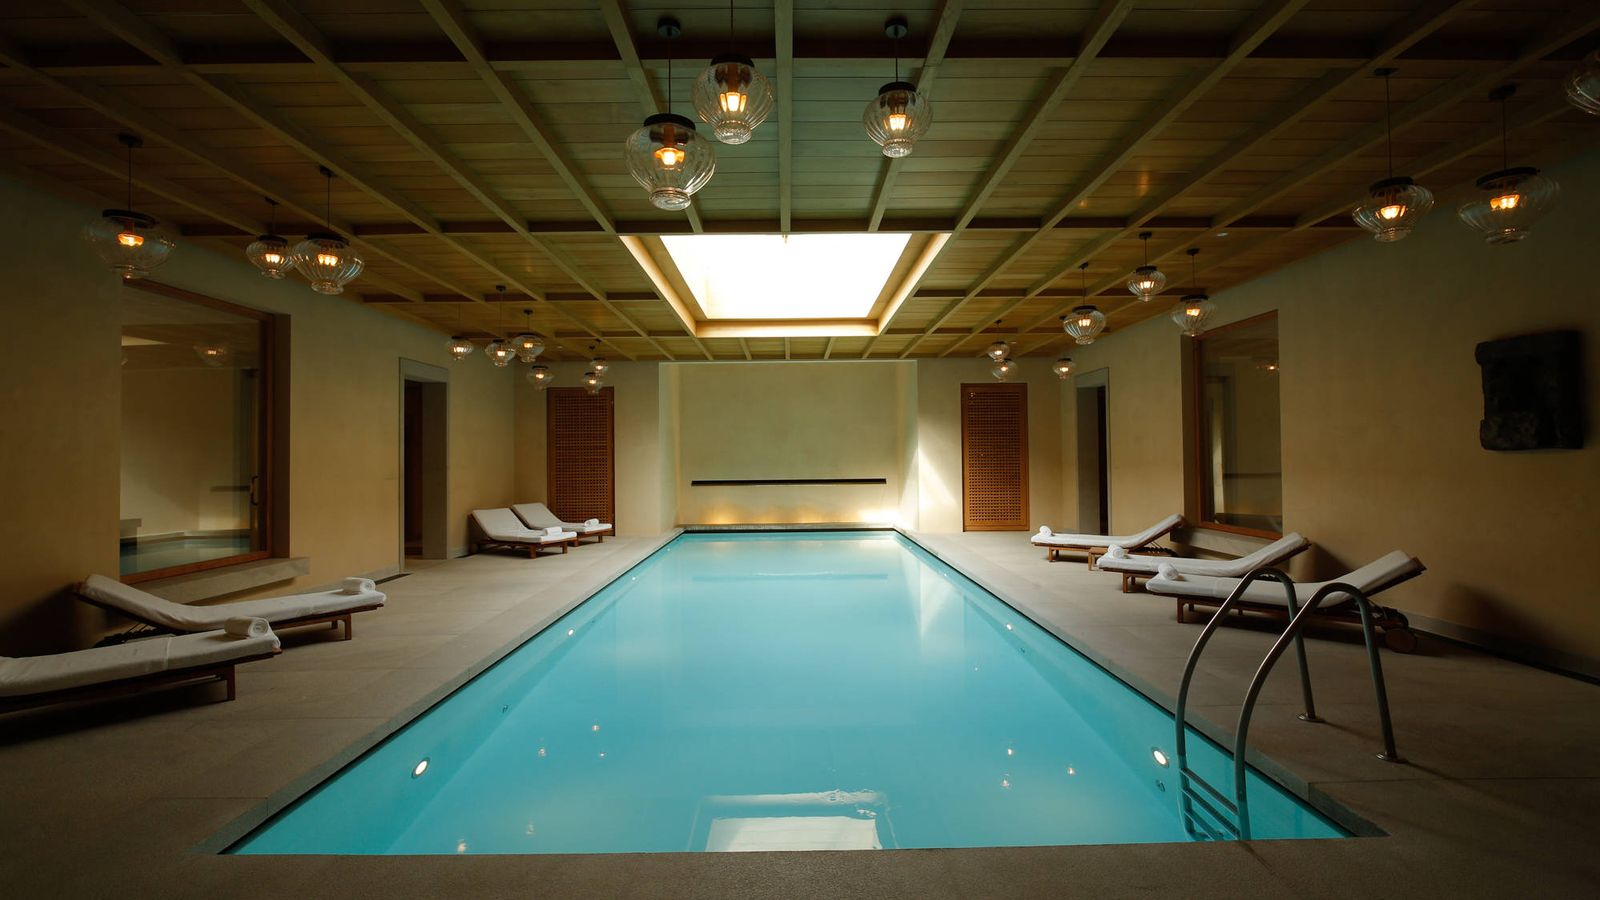 Foto: Así es la piscina del spa Santuario del hotel Abadía Retuerta Le Domaine. (Cortesía)